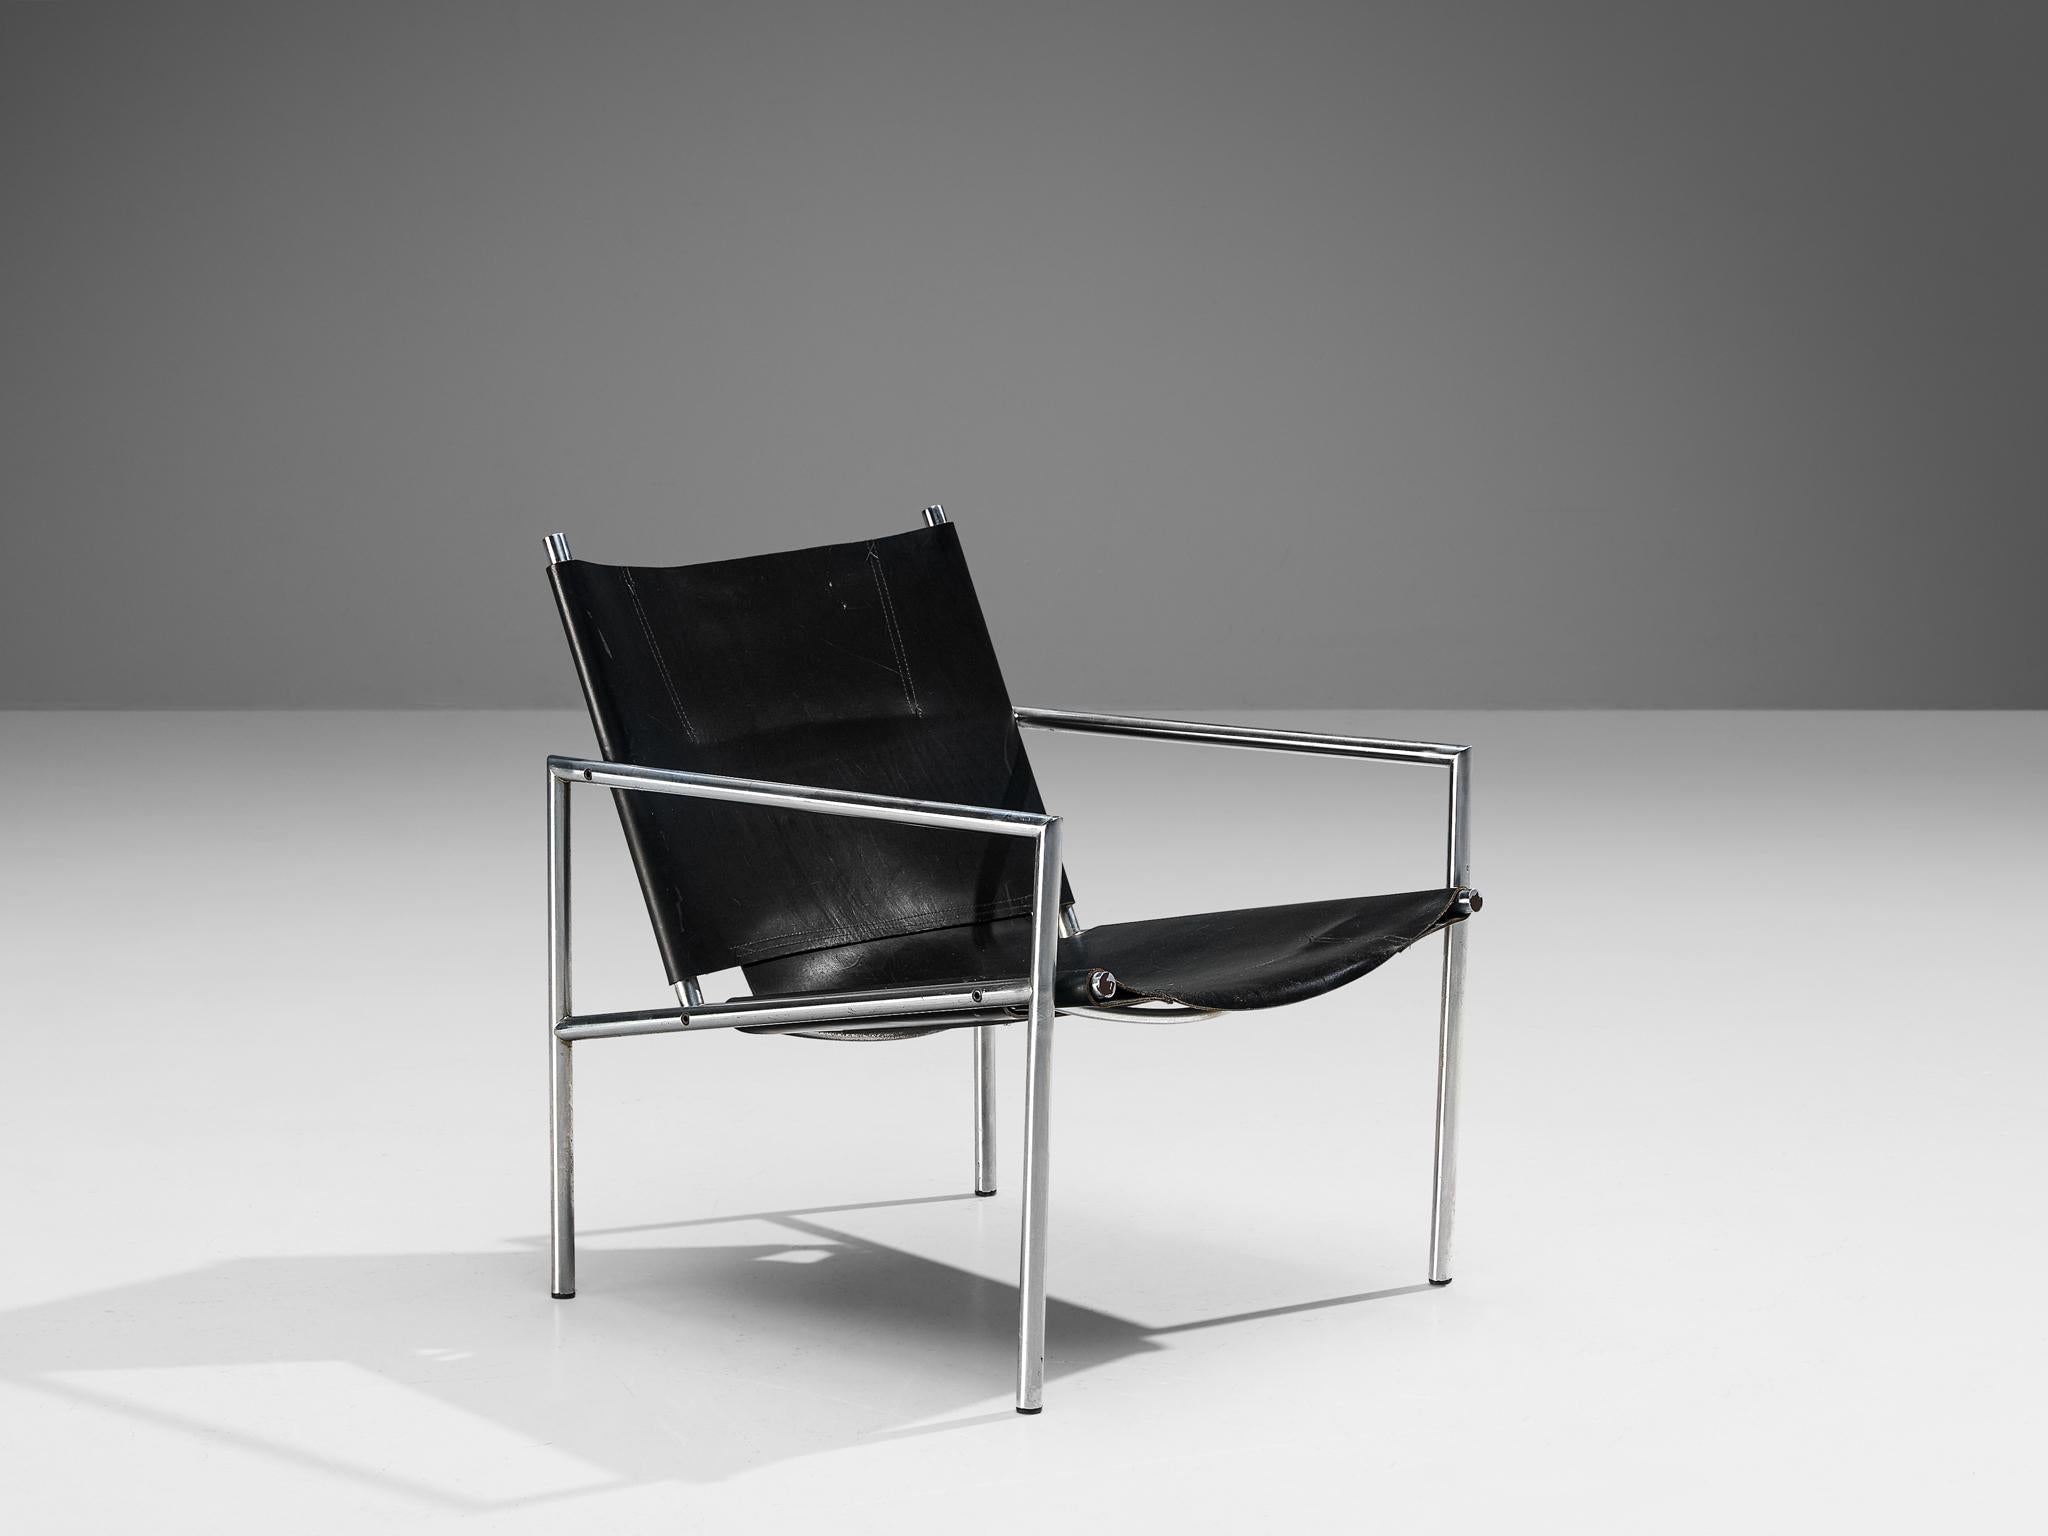 Martin Visser pour 't Spectrum, chaise longue, modèle 'SZ 02', cuir, acier brossé, Pays-Bas, 1965

Ce fauteuil moderne et minimaliste est fabriqué en acier tubulaire brossé en combinaison avec un revêtement en cuir noir. La construction ouverte du